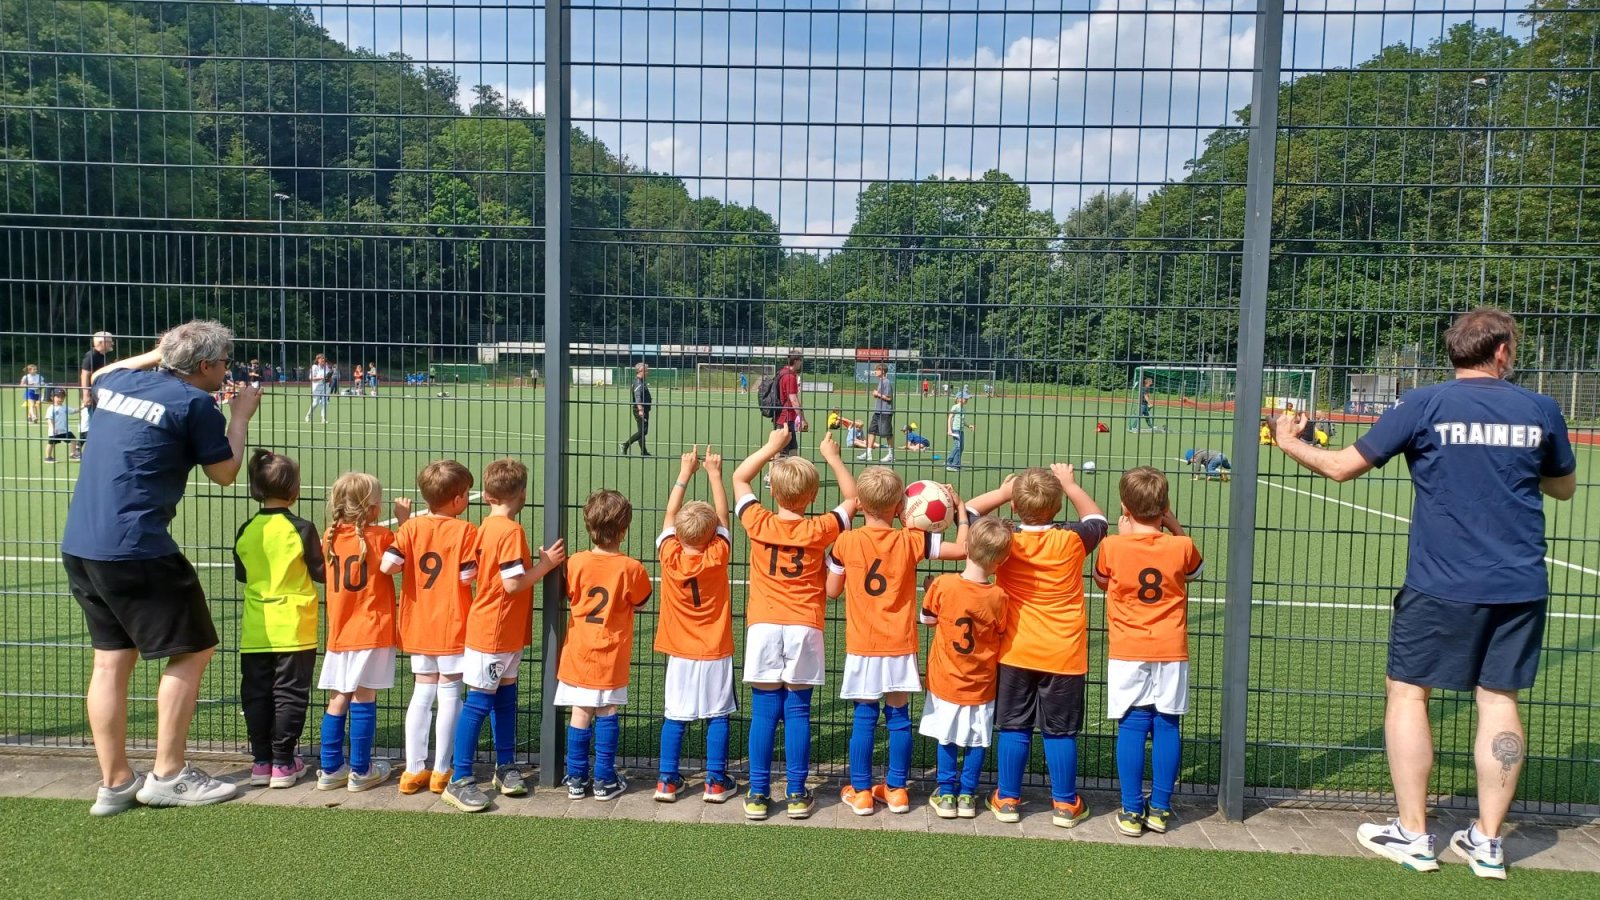 Kinder der Fußballmannschaft der Rumpelwichte mit Trainern links und rechts im Bild